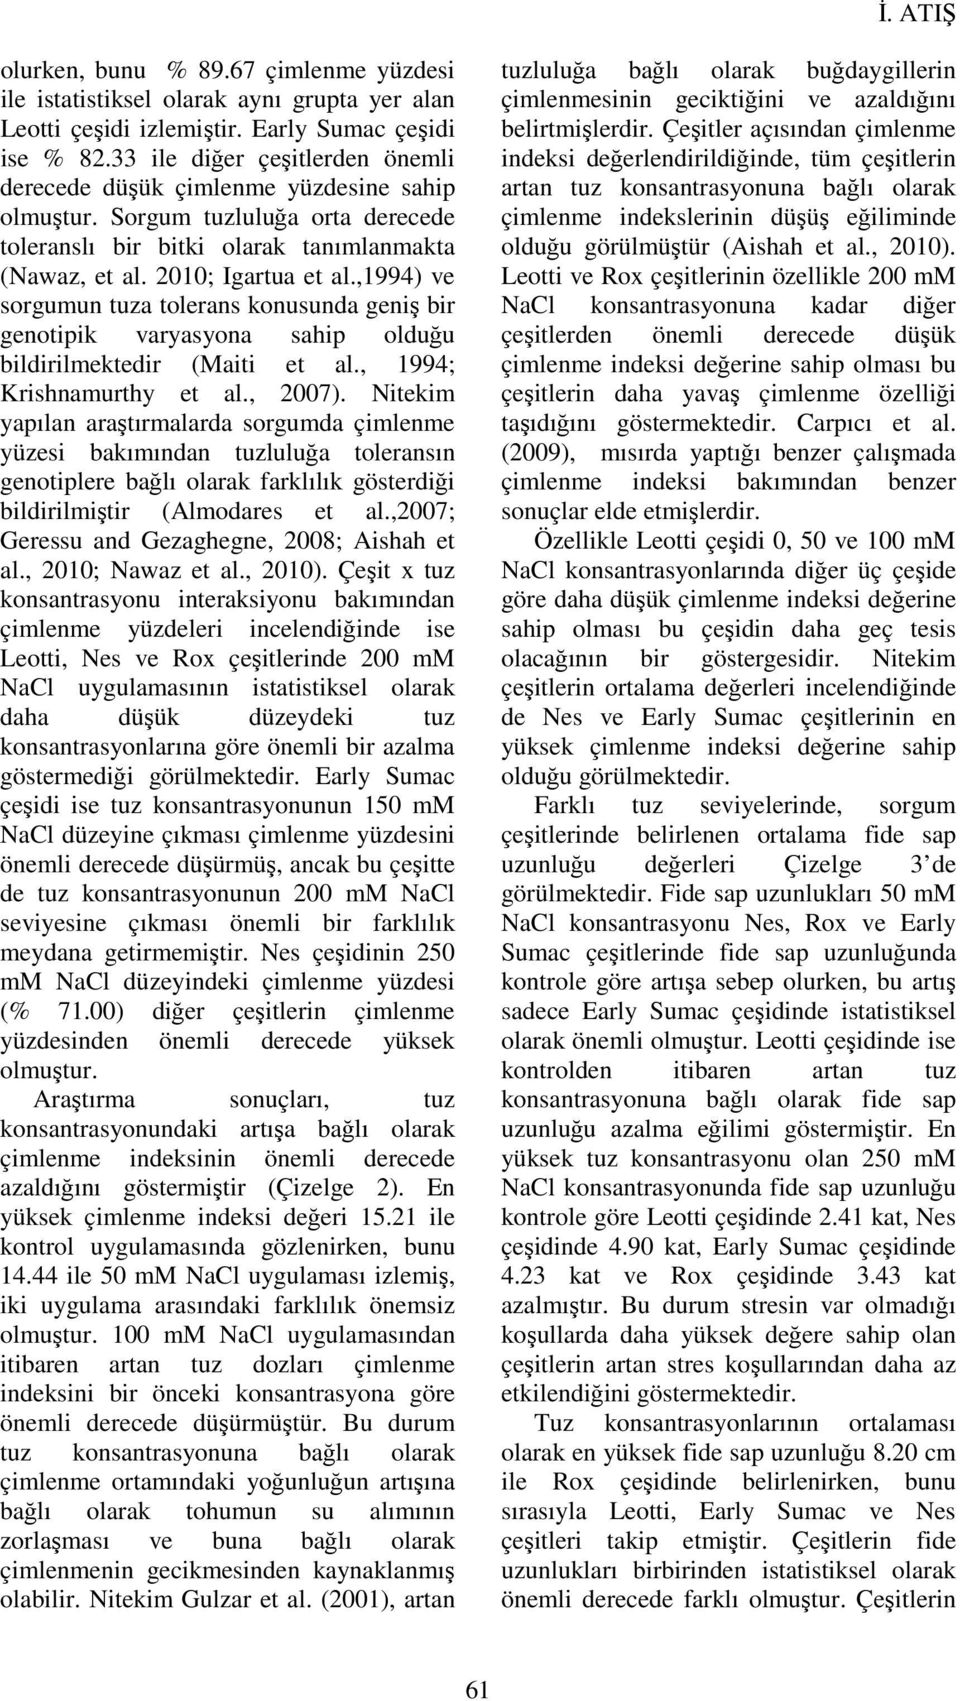 ,1994) ve sorgumun tuza tolerans konusunda geniş bir genotipik varyasyona sahip olduğu bildirilmektedir (Maiti et al., 1994; Krishnamurthy et al., 2007).